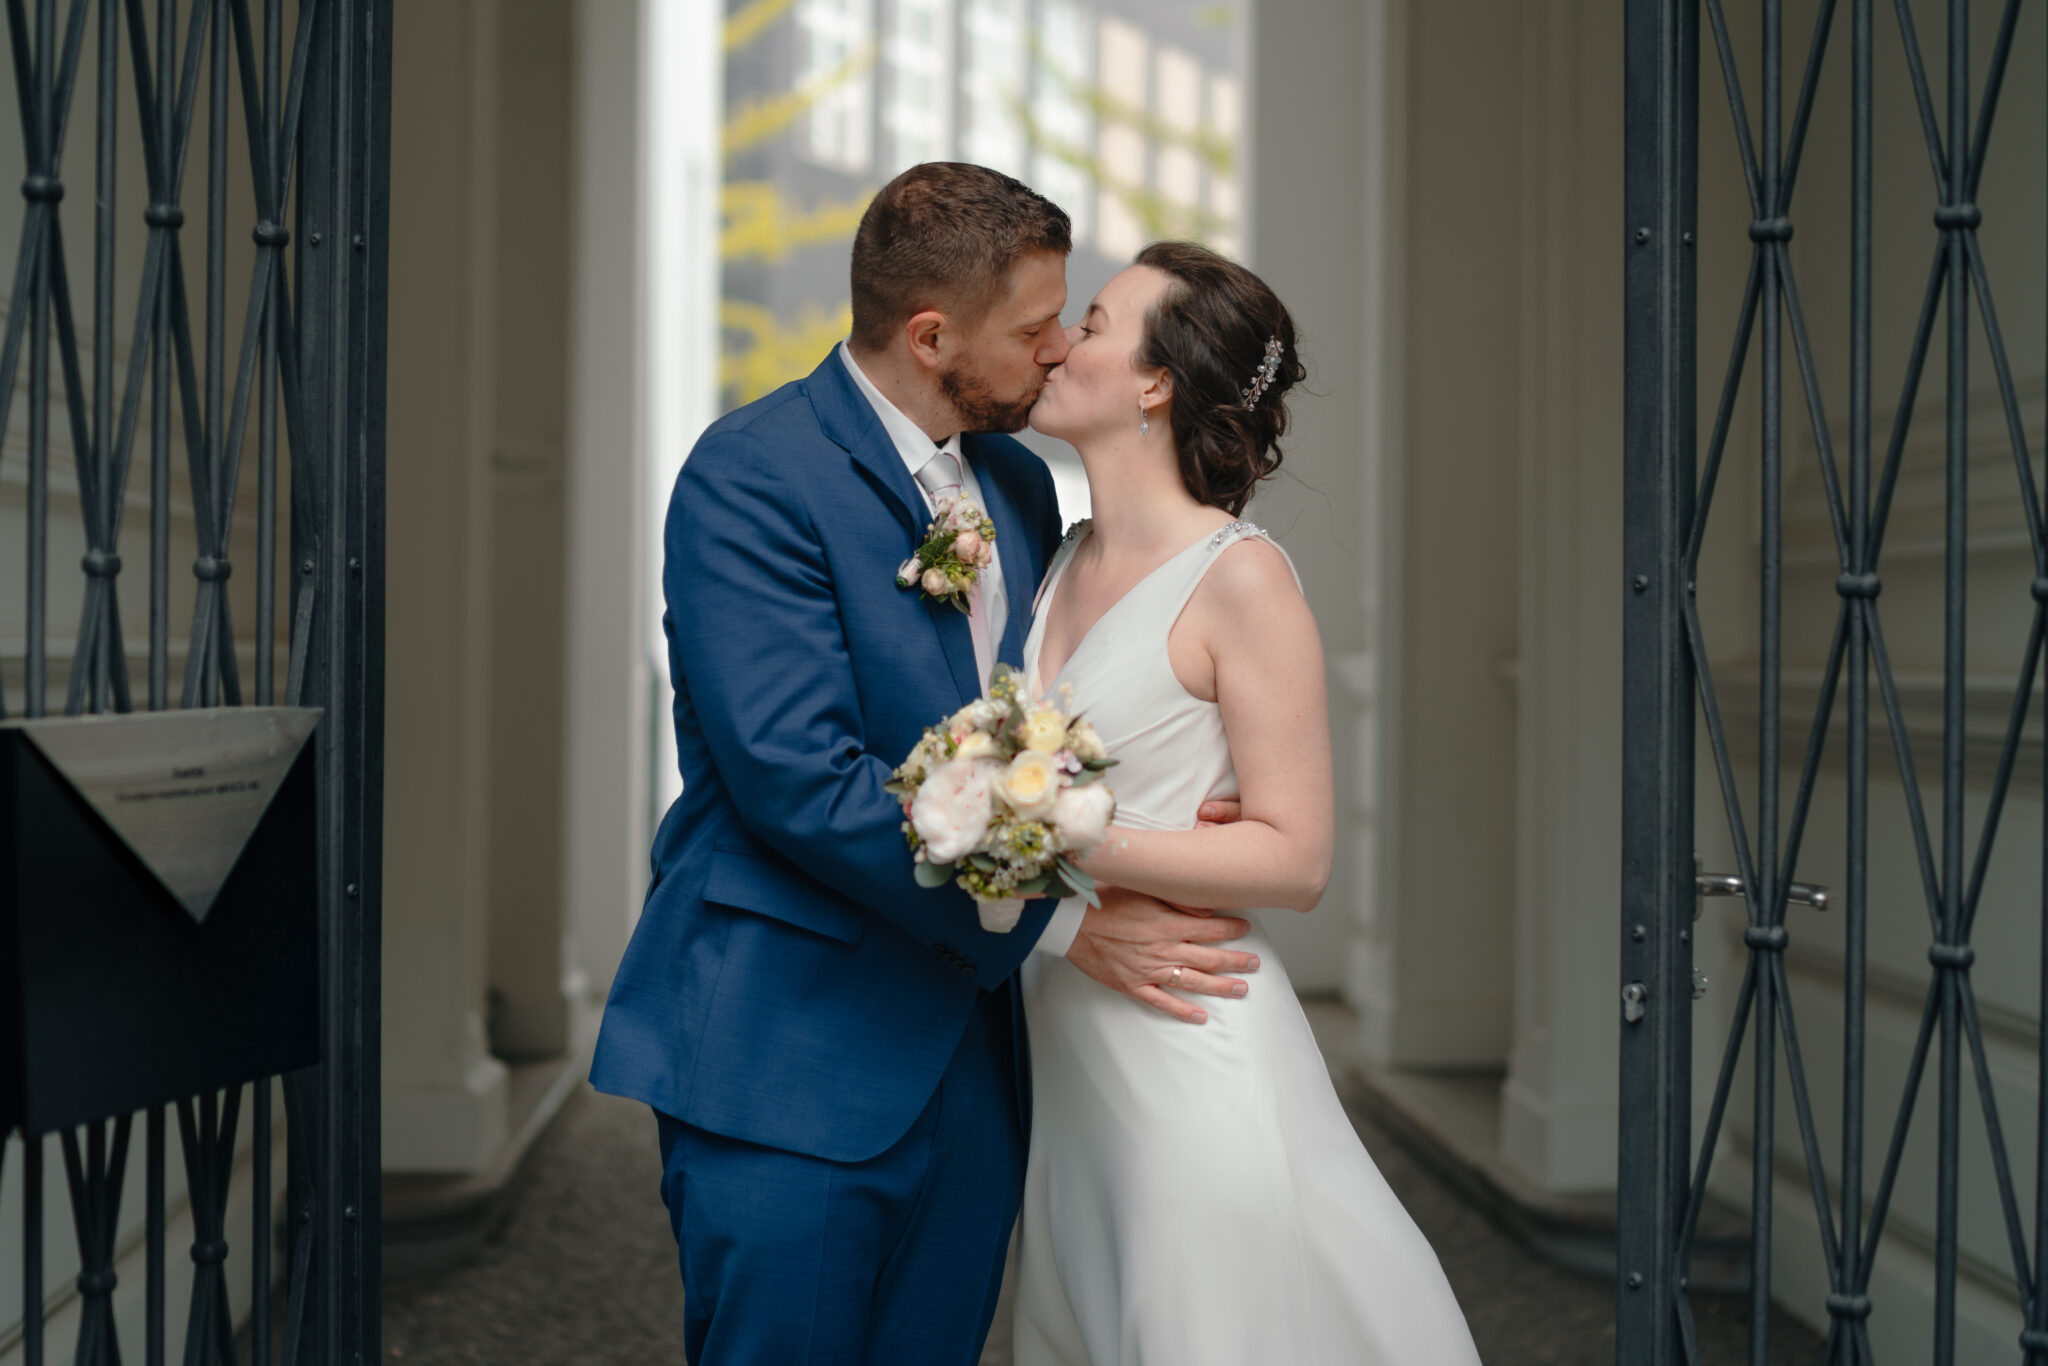 Hochzeit Fotoshooting Kuss von Brautpaar